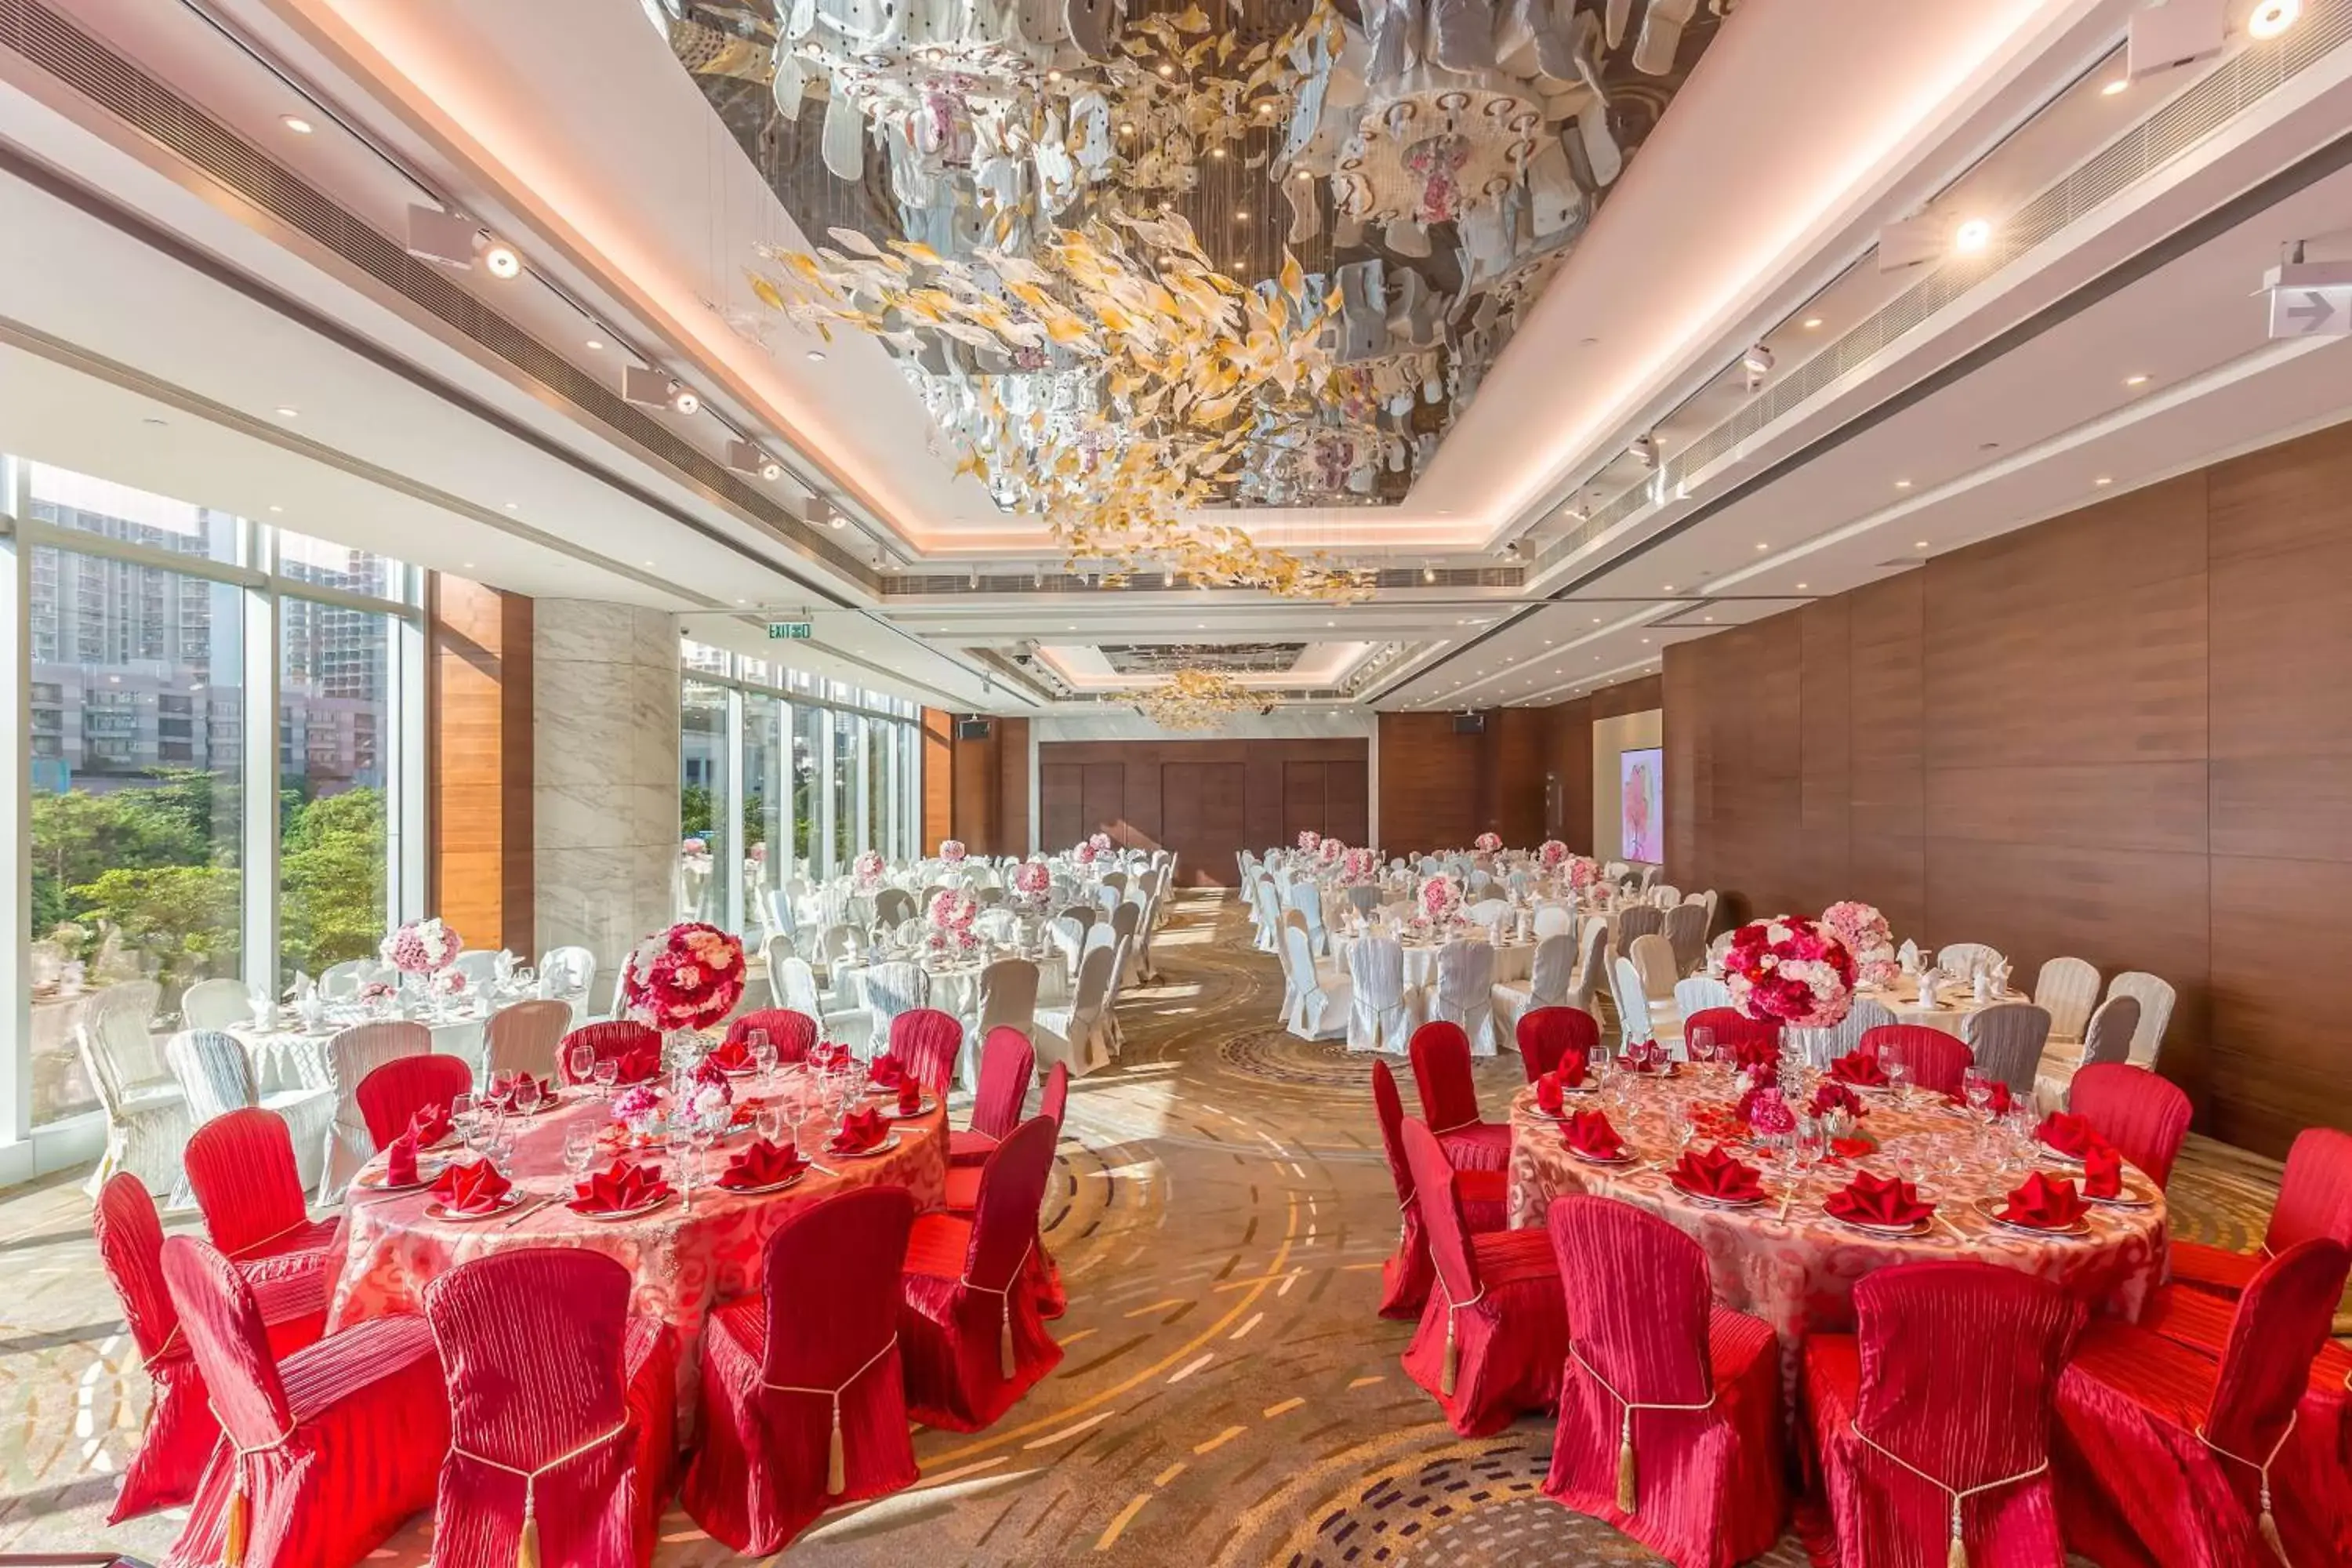 Meeting/conference room, Banquet Facilities in Hilton Garden Inn Hong Kong Mongkok